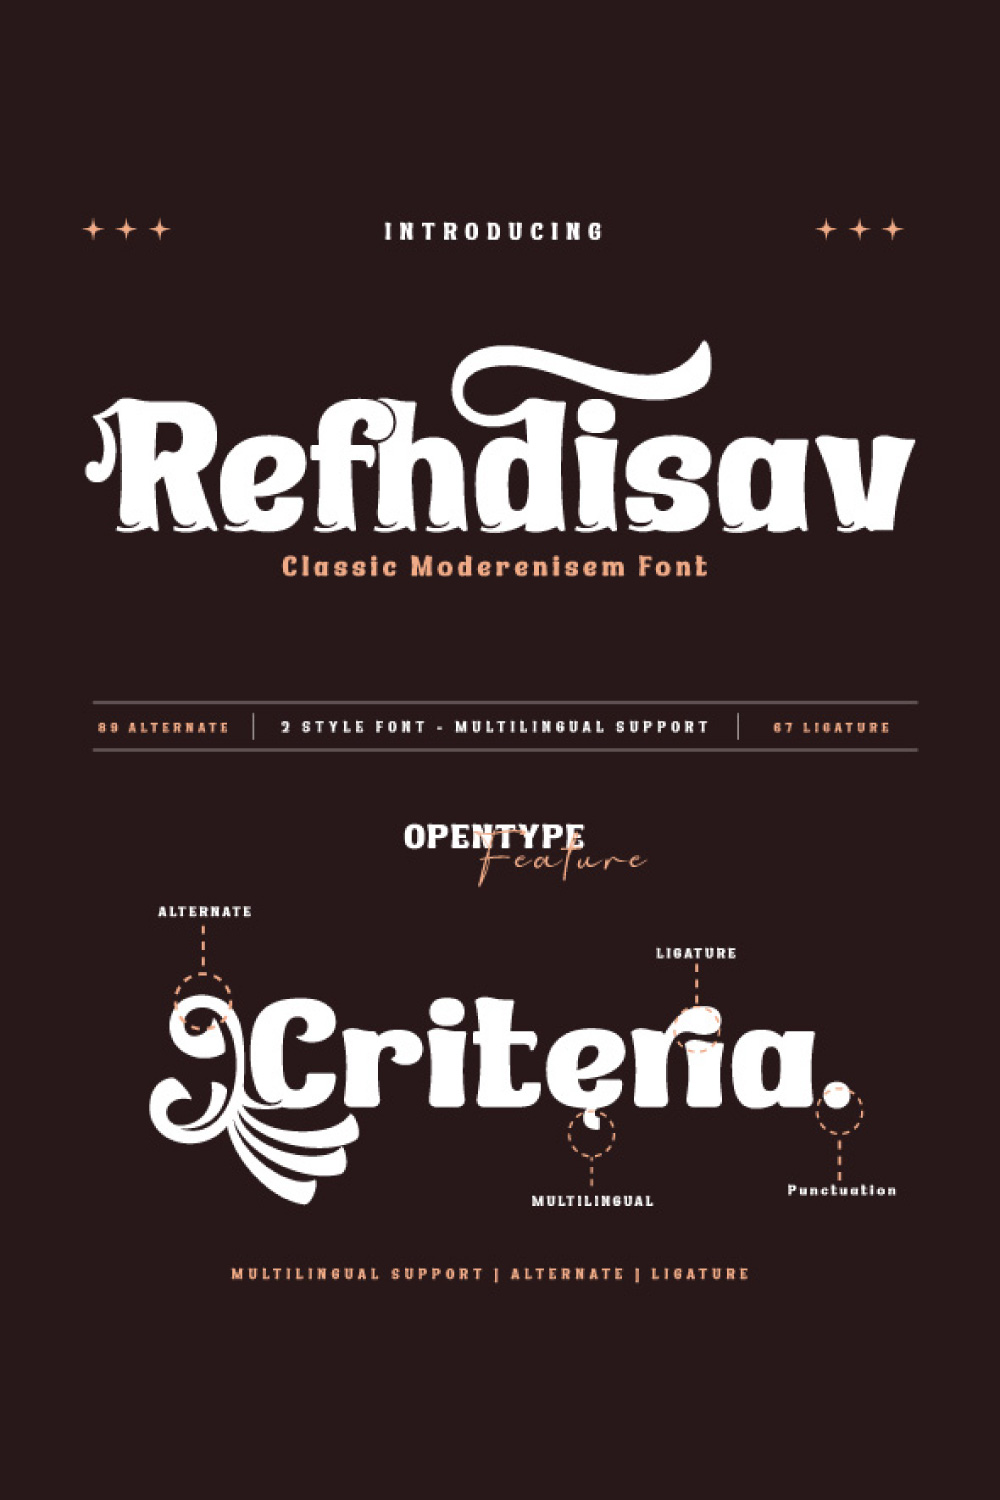 Refhdisav | Serif Classic Modernism pinterest preview image.